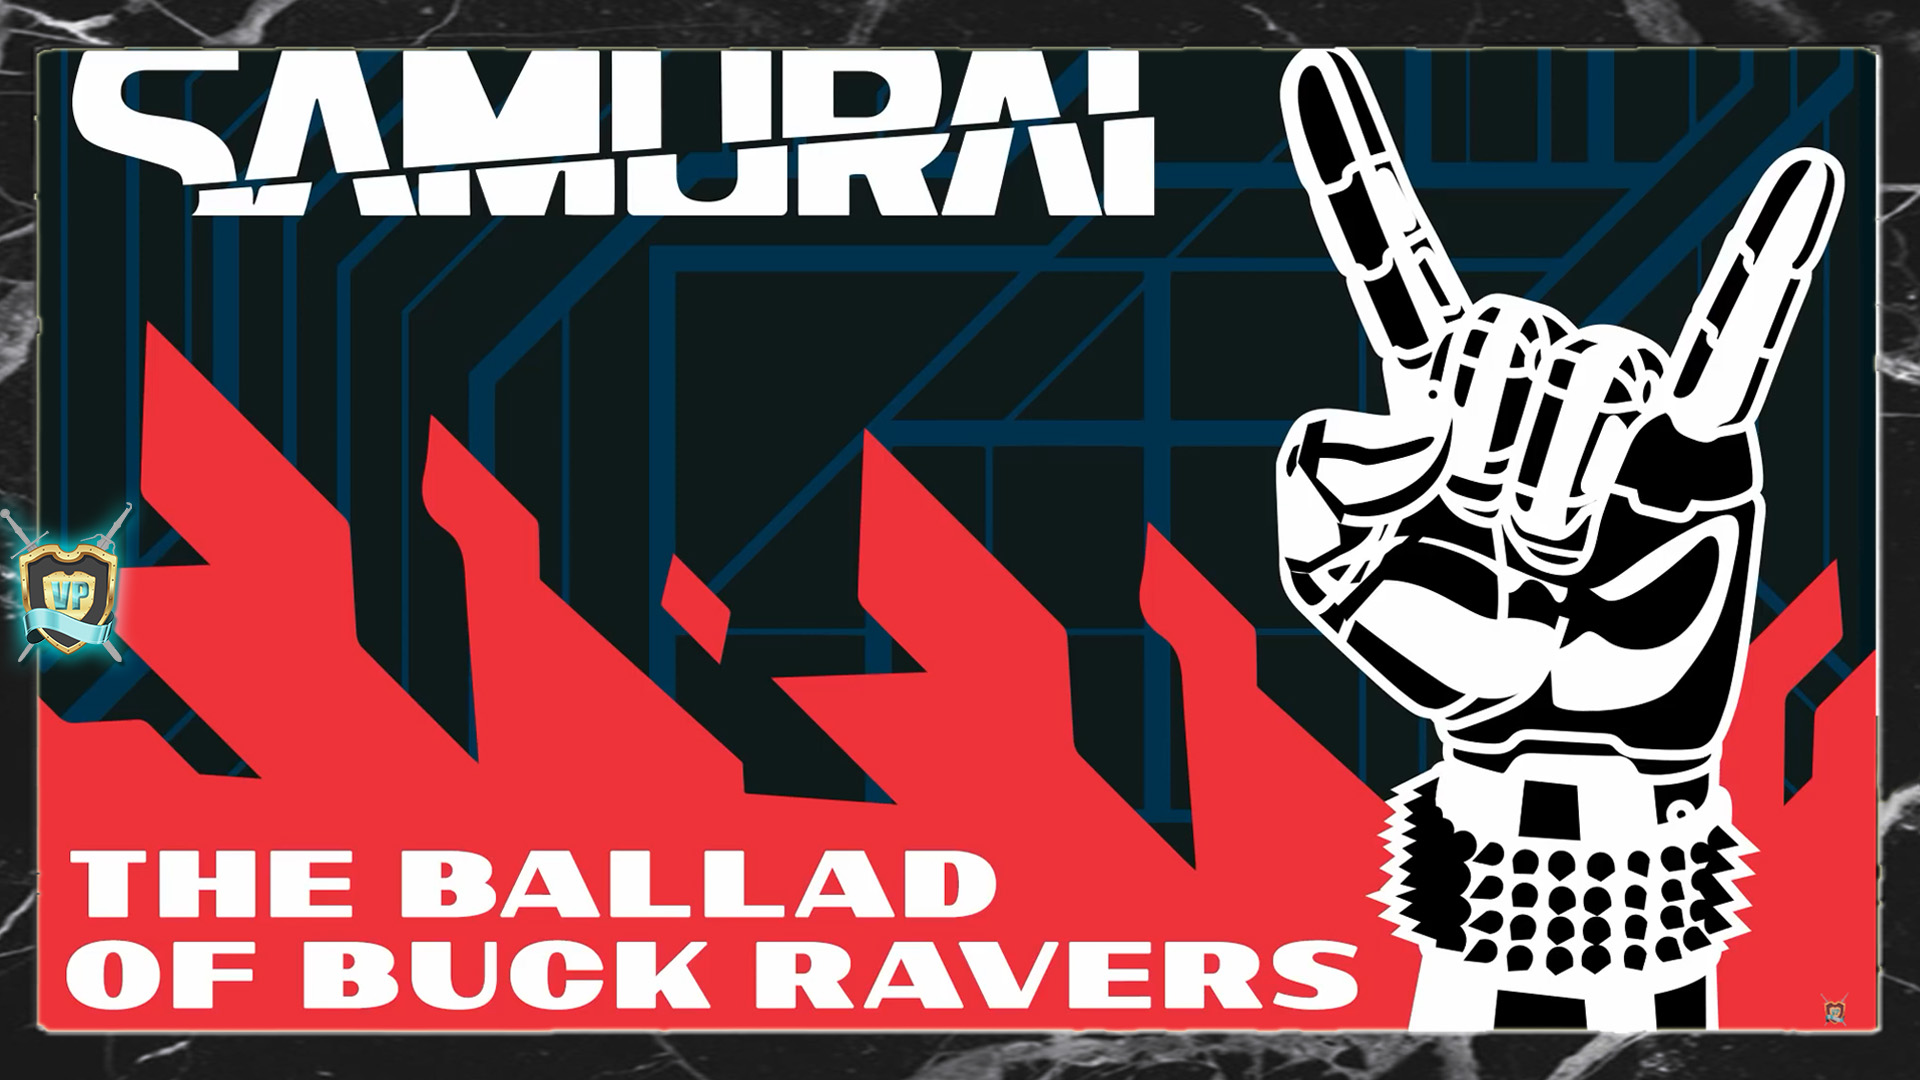 The Ballad of Buck Ravers Samurai